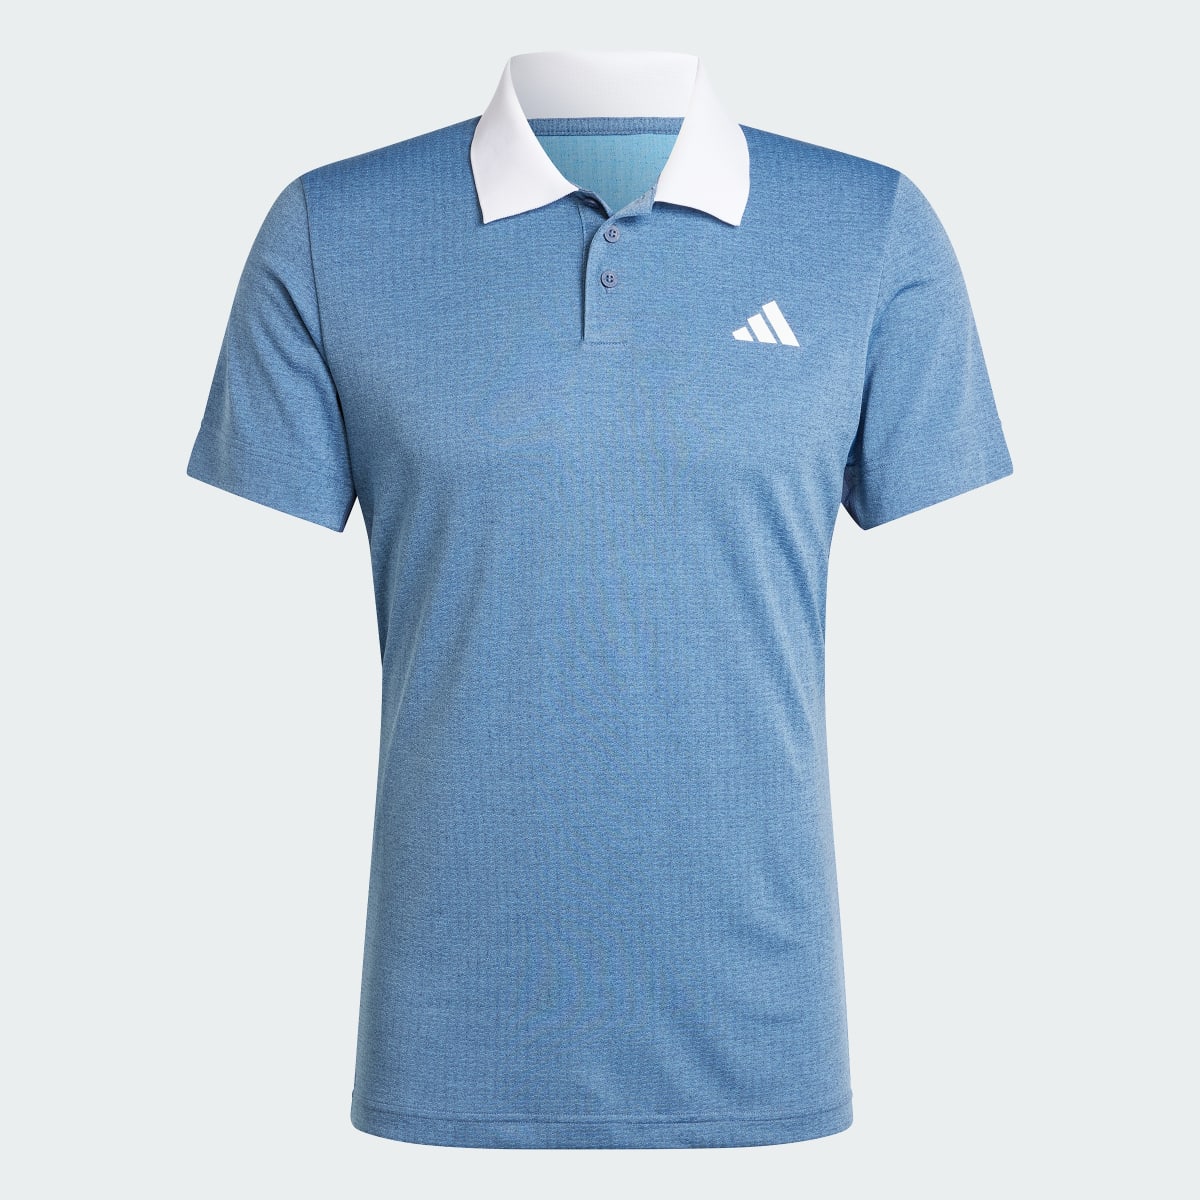 Adidas Koszulka Tennis FreeLift Polo. 5